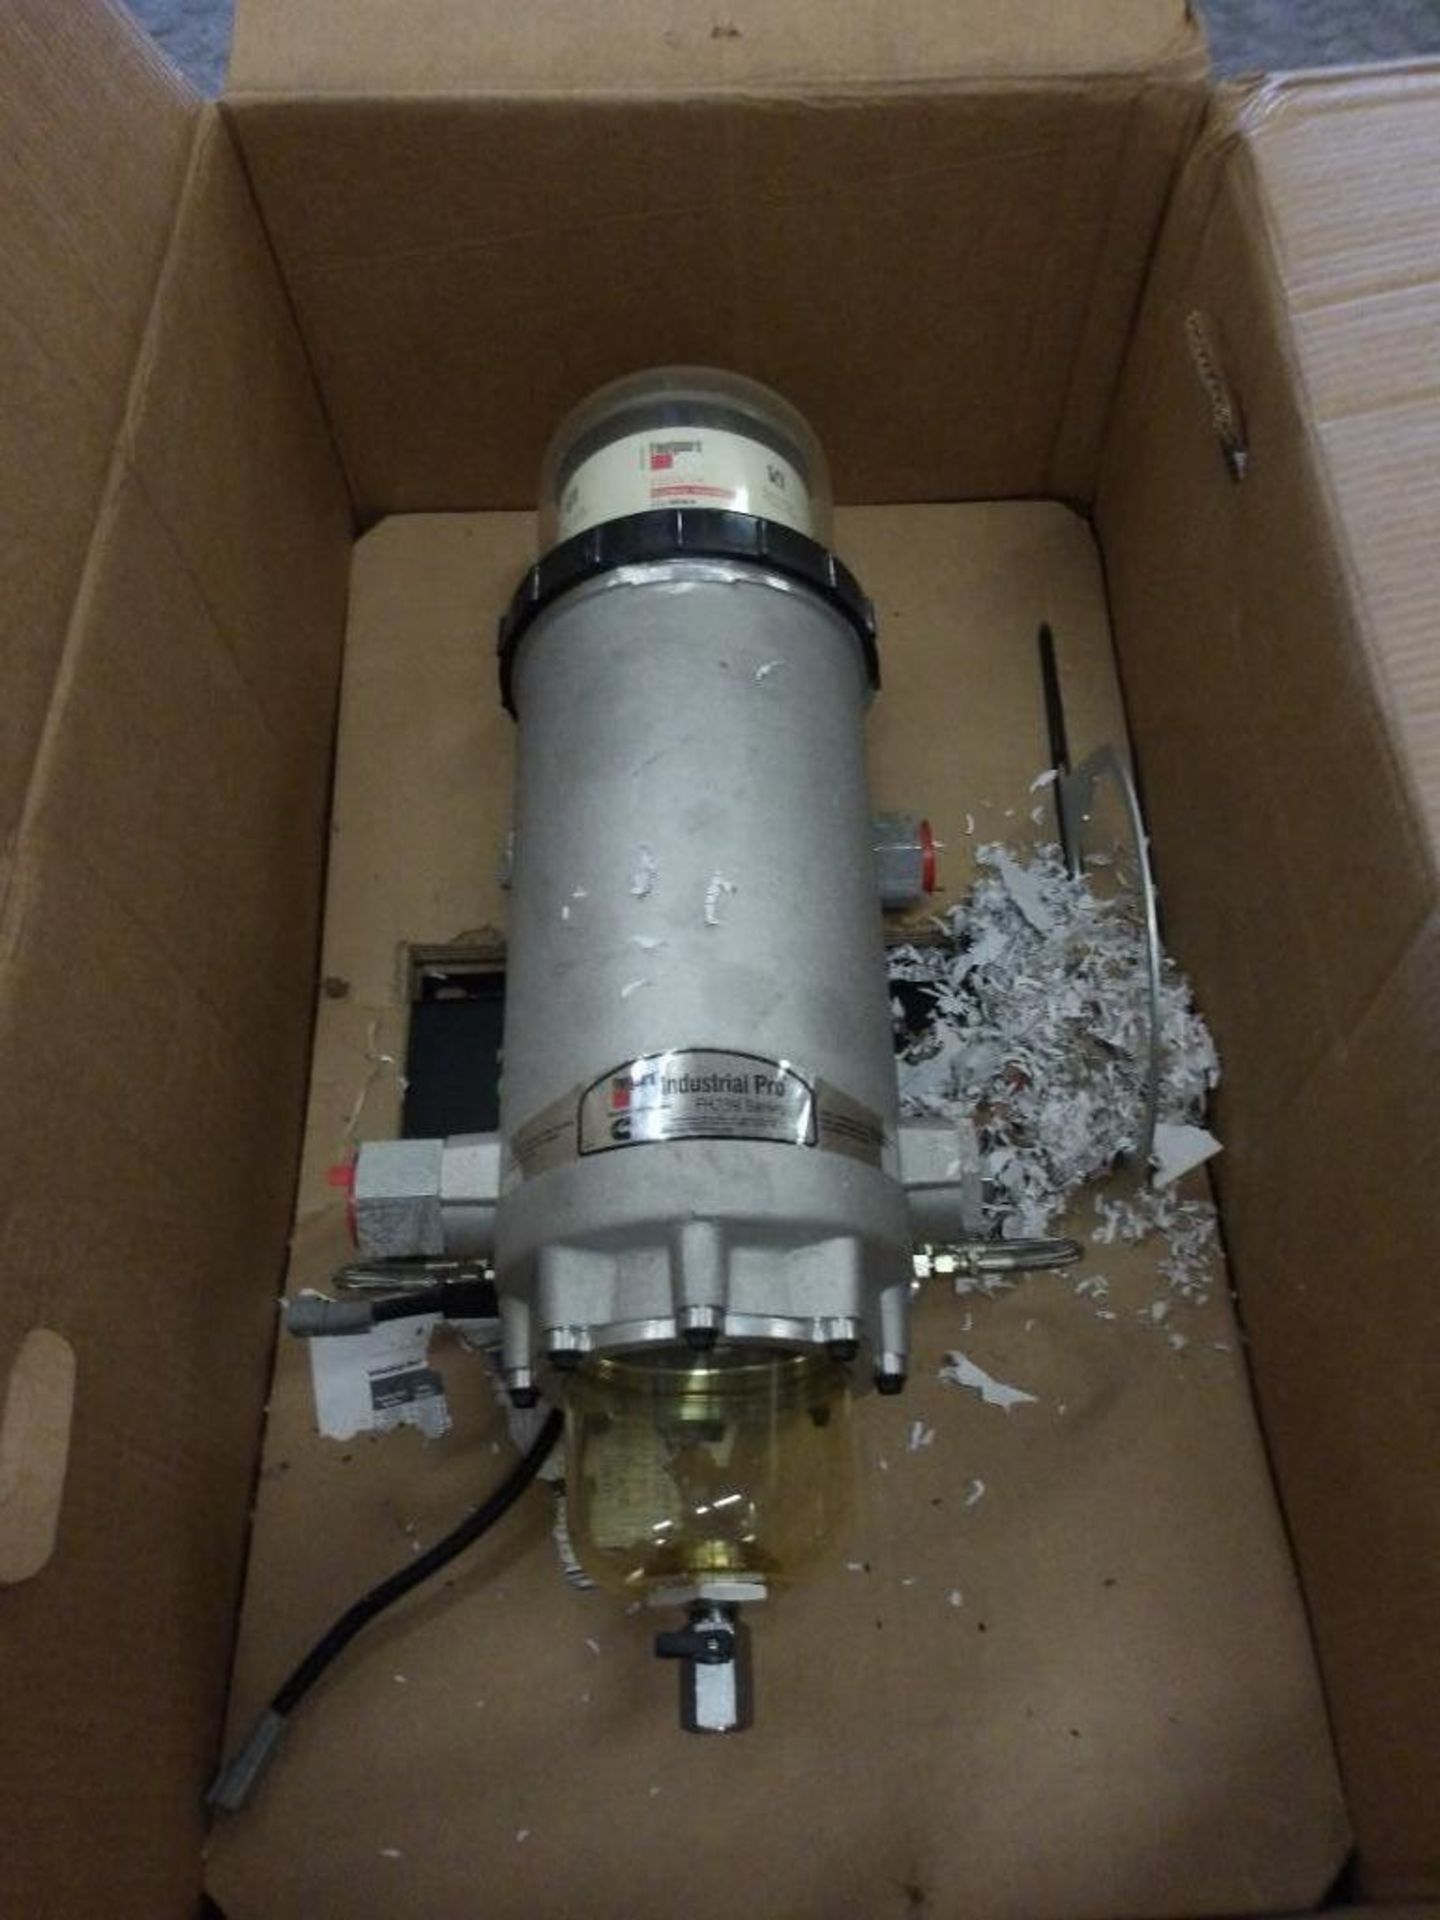 Fleetguard FS53014 Fuel Water Separator, Model FS53014 (New) - Image 3 of 10